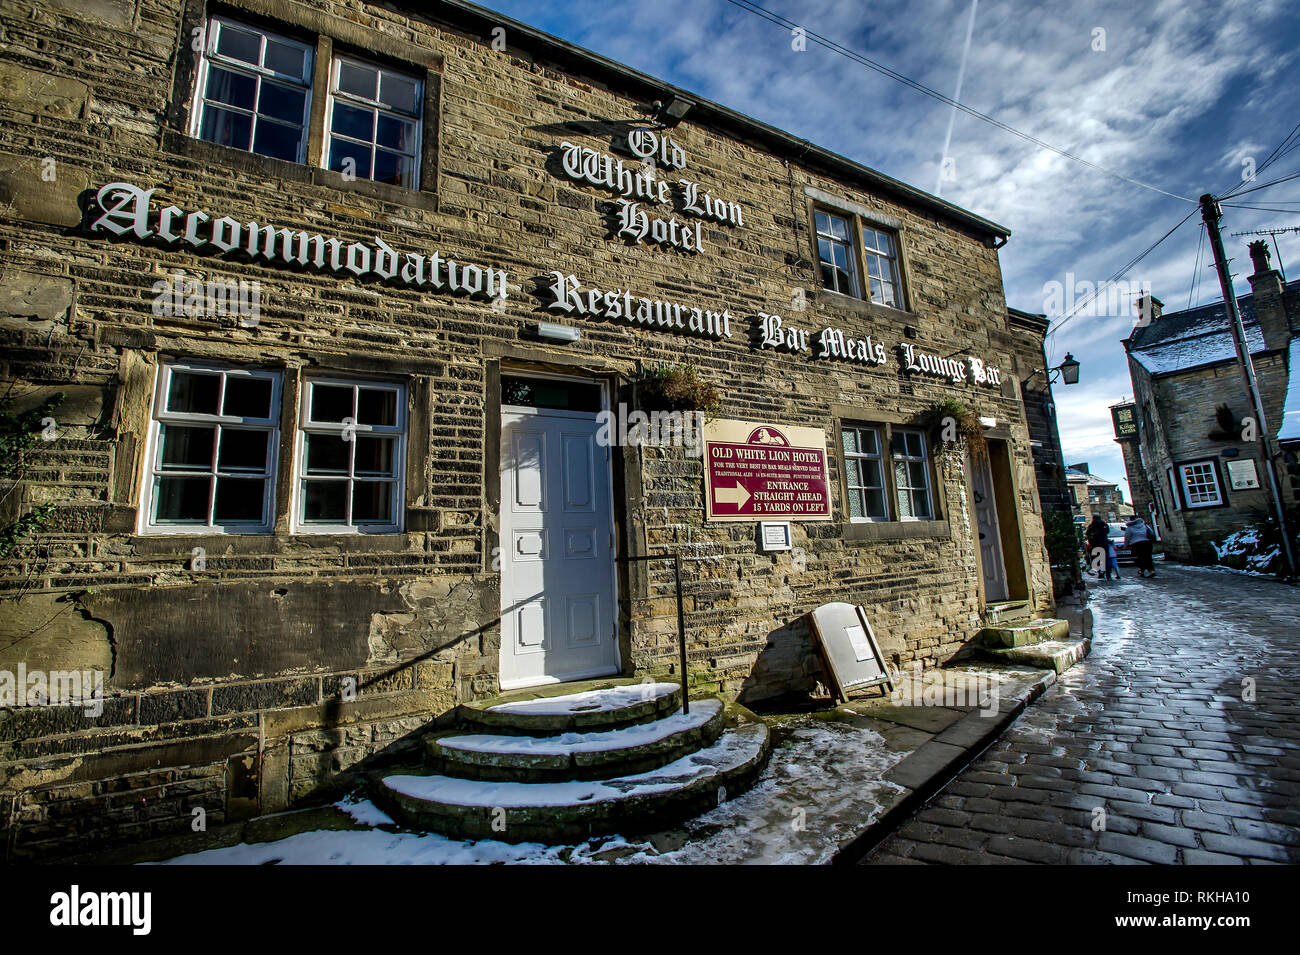 Das Dorf von Haworth in West Yorkshire, England, UK. Das Dorf war die Heimat des berühmten bront' Schwestern Ð Charlotte, Emily und Anne, die alle schrieb. Stockfoto